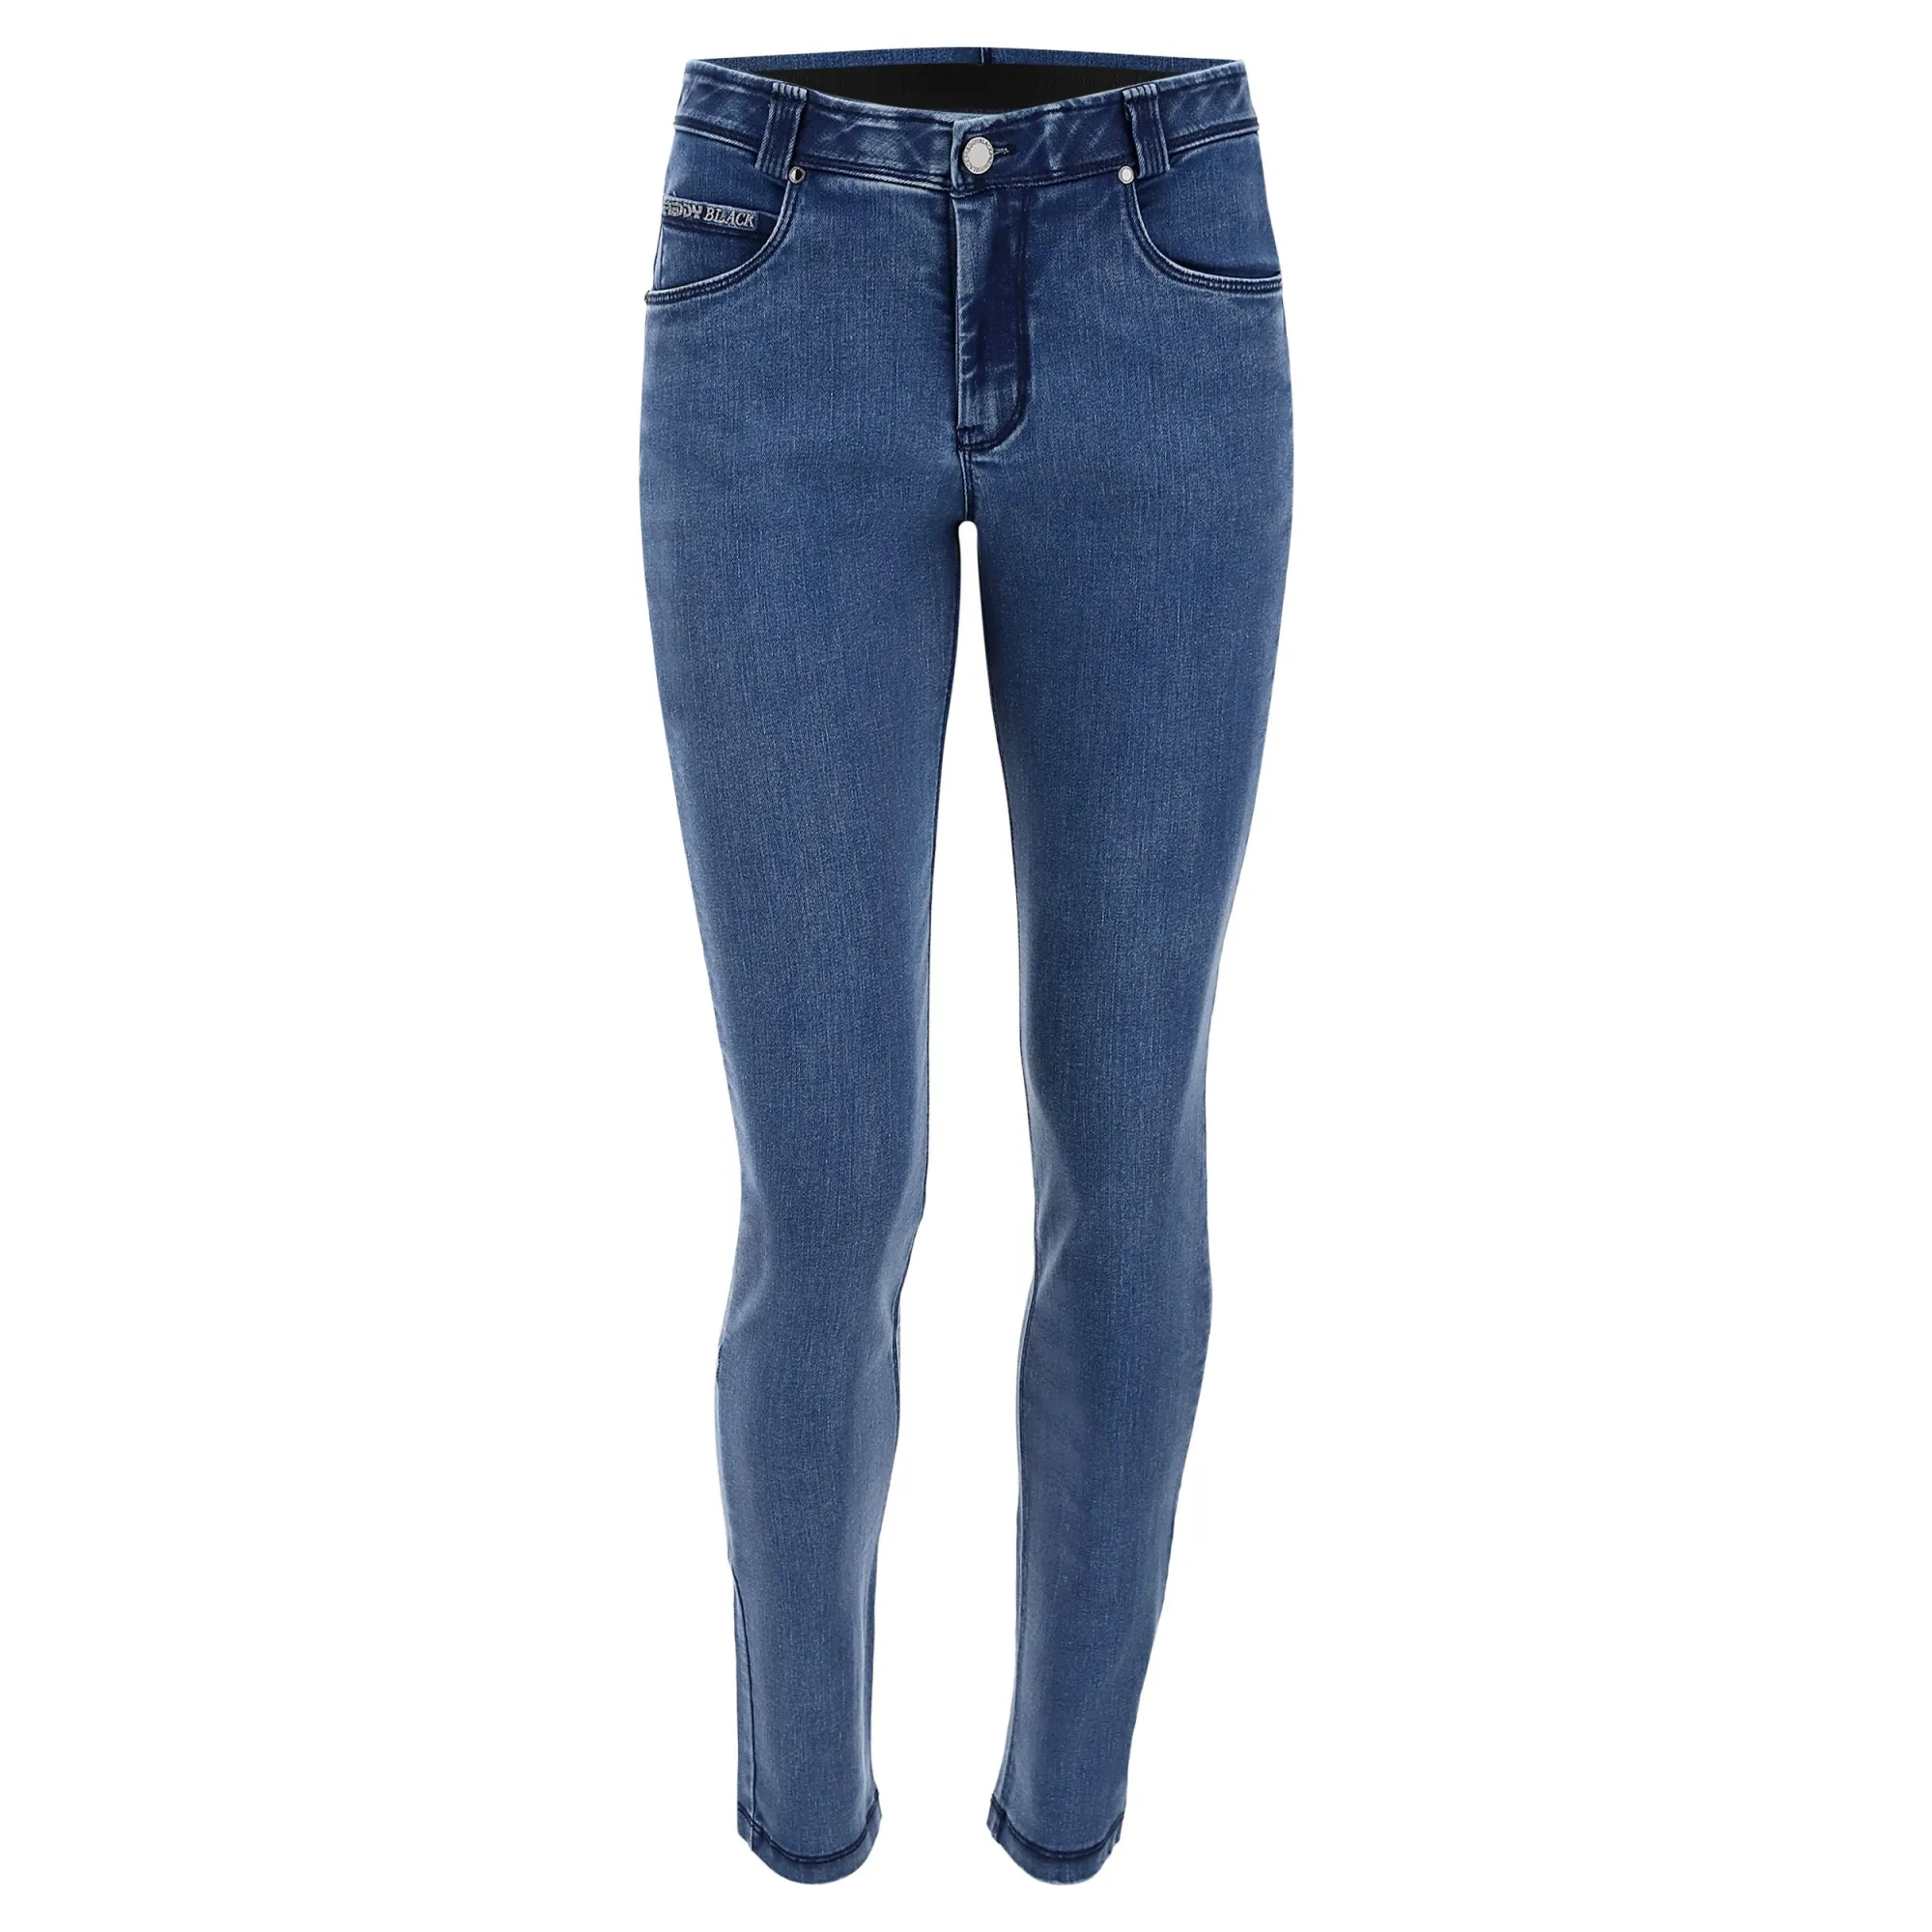 Freddy Fit Jeans - Regular Waist Skinny - Clear Denim - Blue Seam - J4B